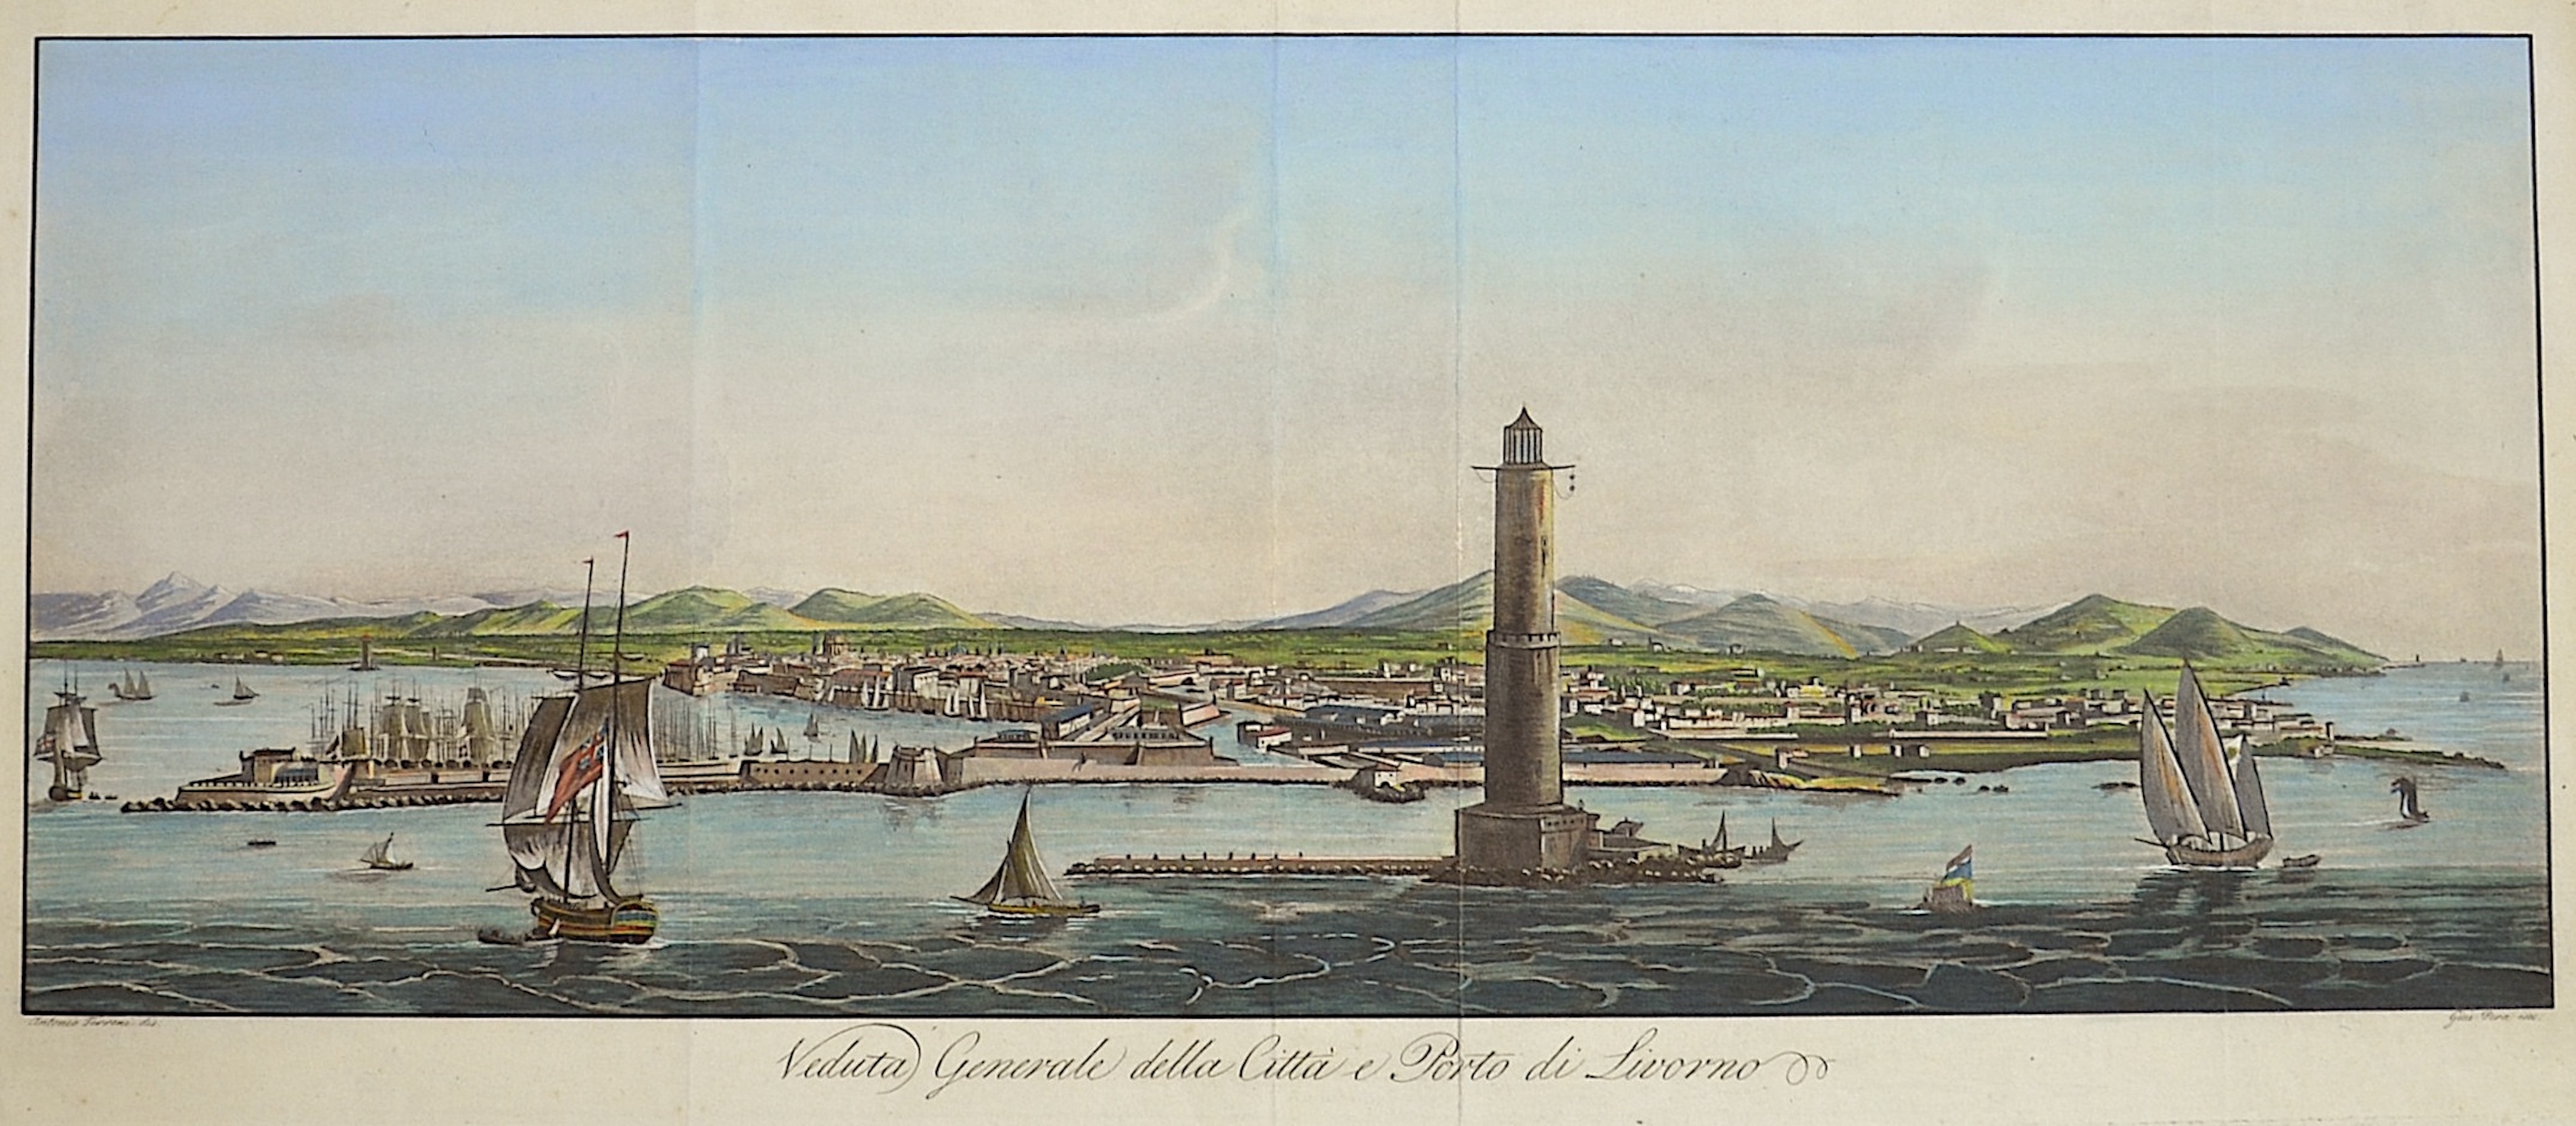 Terreni A. Veduta generale della citta e Porto di Livorno